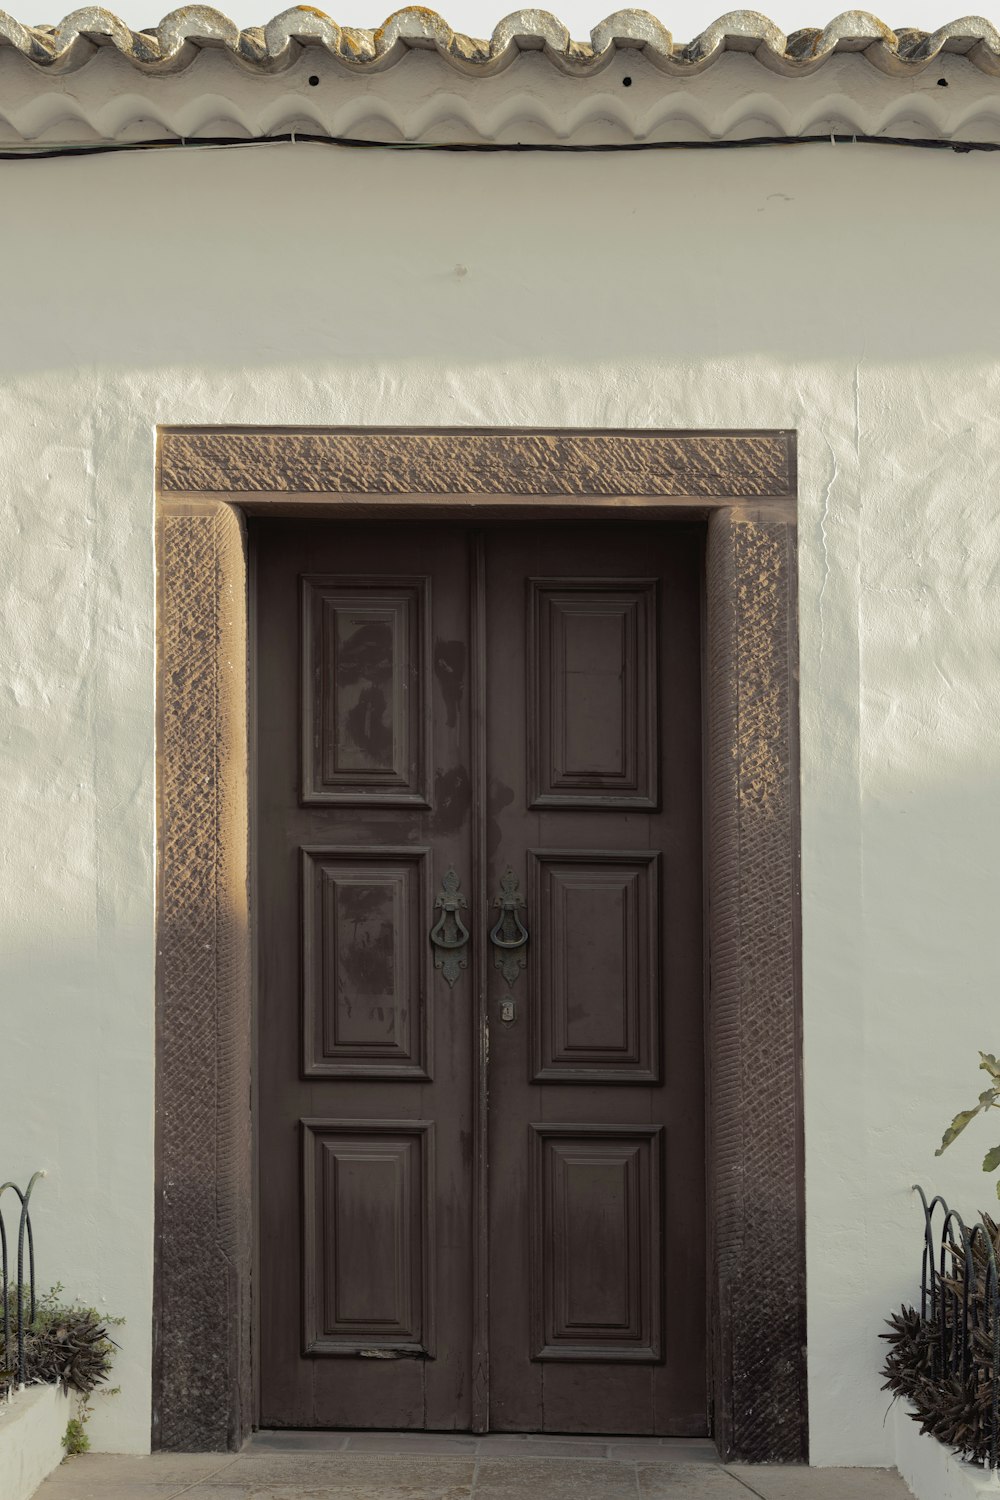 하얀 건물 옆에 앉아 있는 커다란 갈색 문